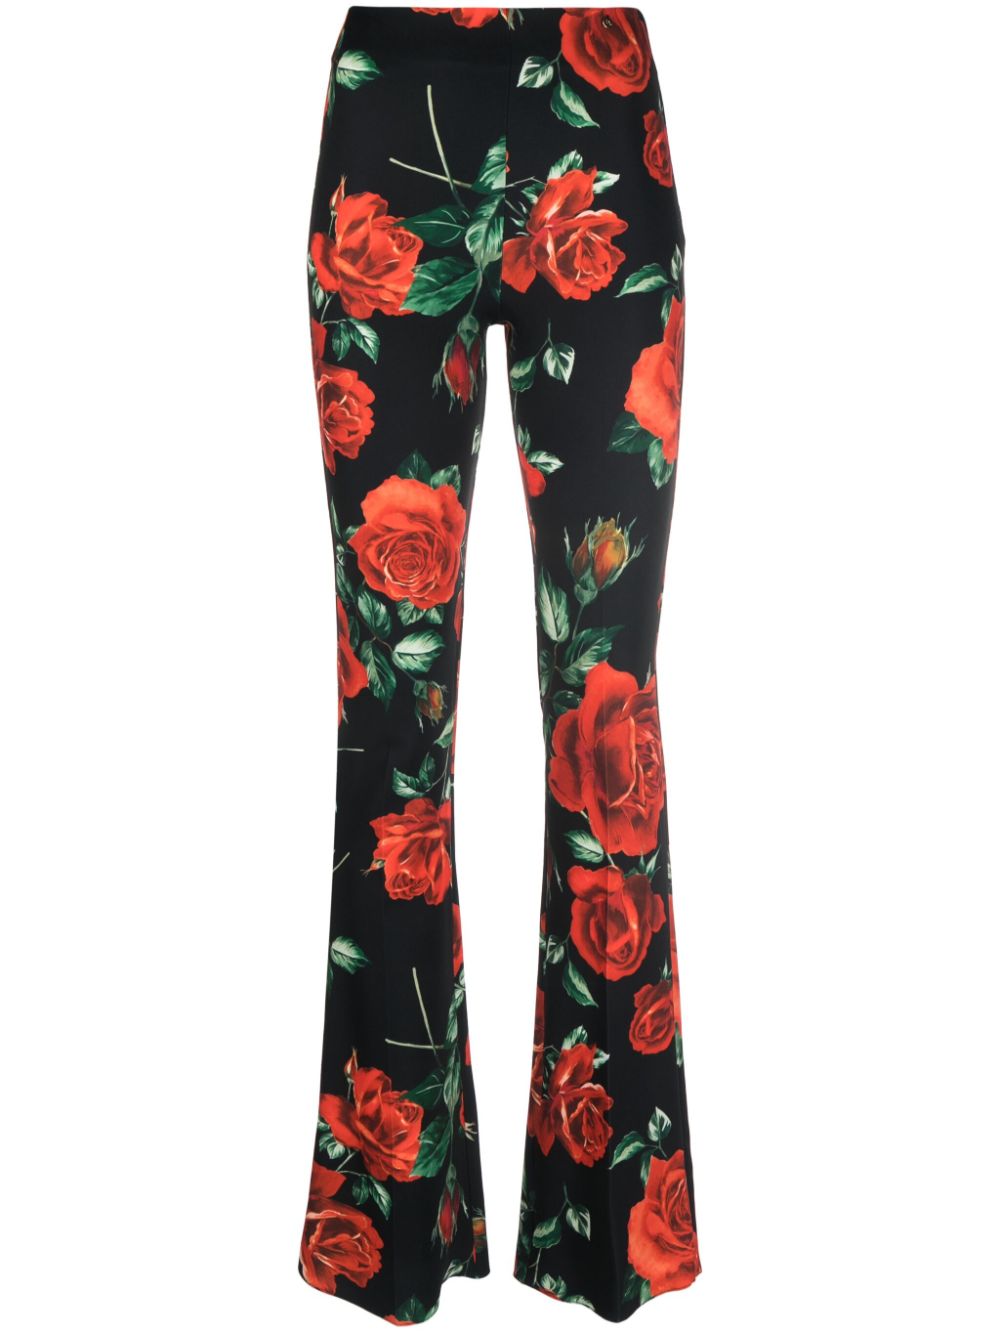 아니사 케르미쉬 여성 floral-print flared trousers - Black P14392